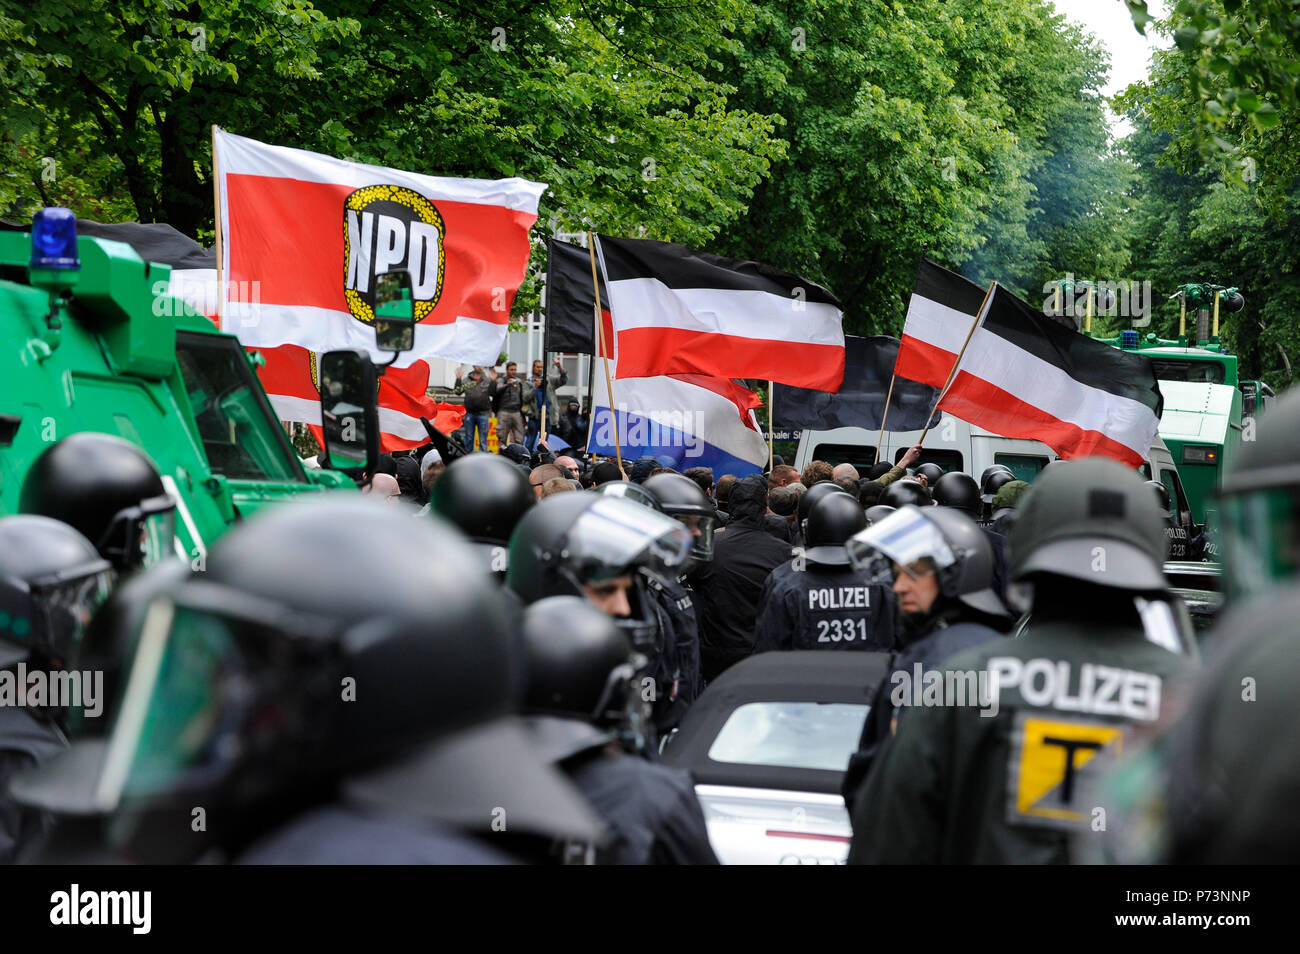 Allemagne, rallye du nazisme et des groupes extrémistes de droite avec les drapeaux de parti de droite NPD in Hamburg, escorté par les forces de police pour éviter des conflits avec d'anti-gauche-manifestants Banque D'Images